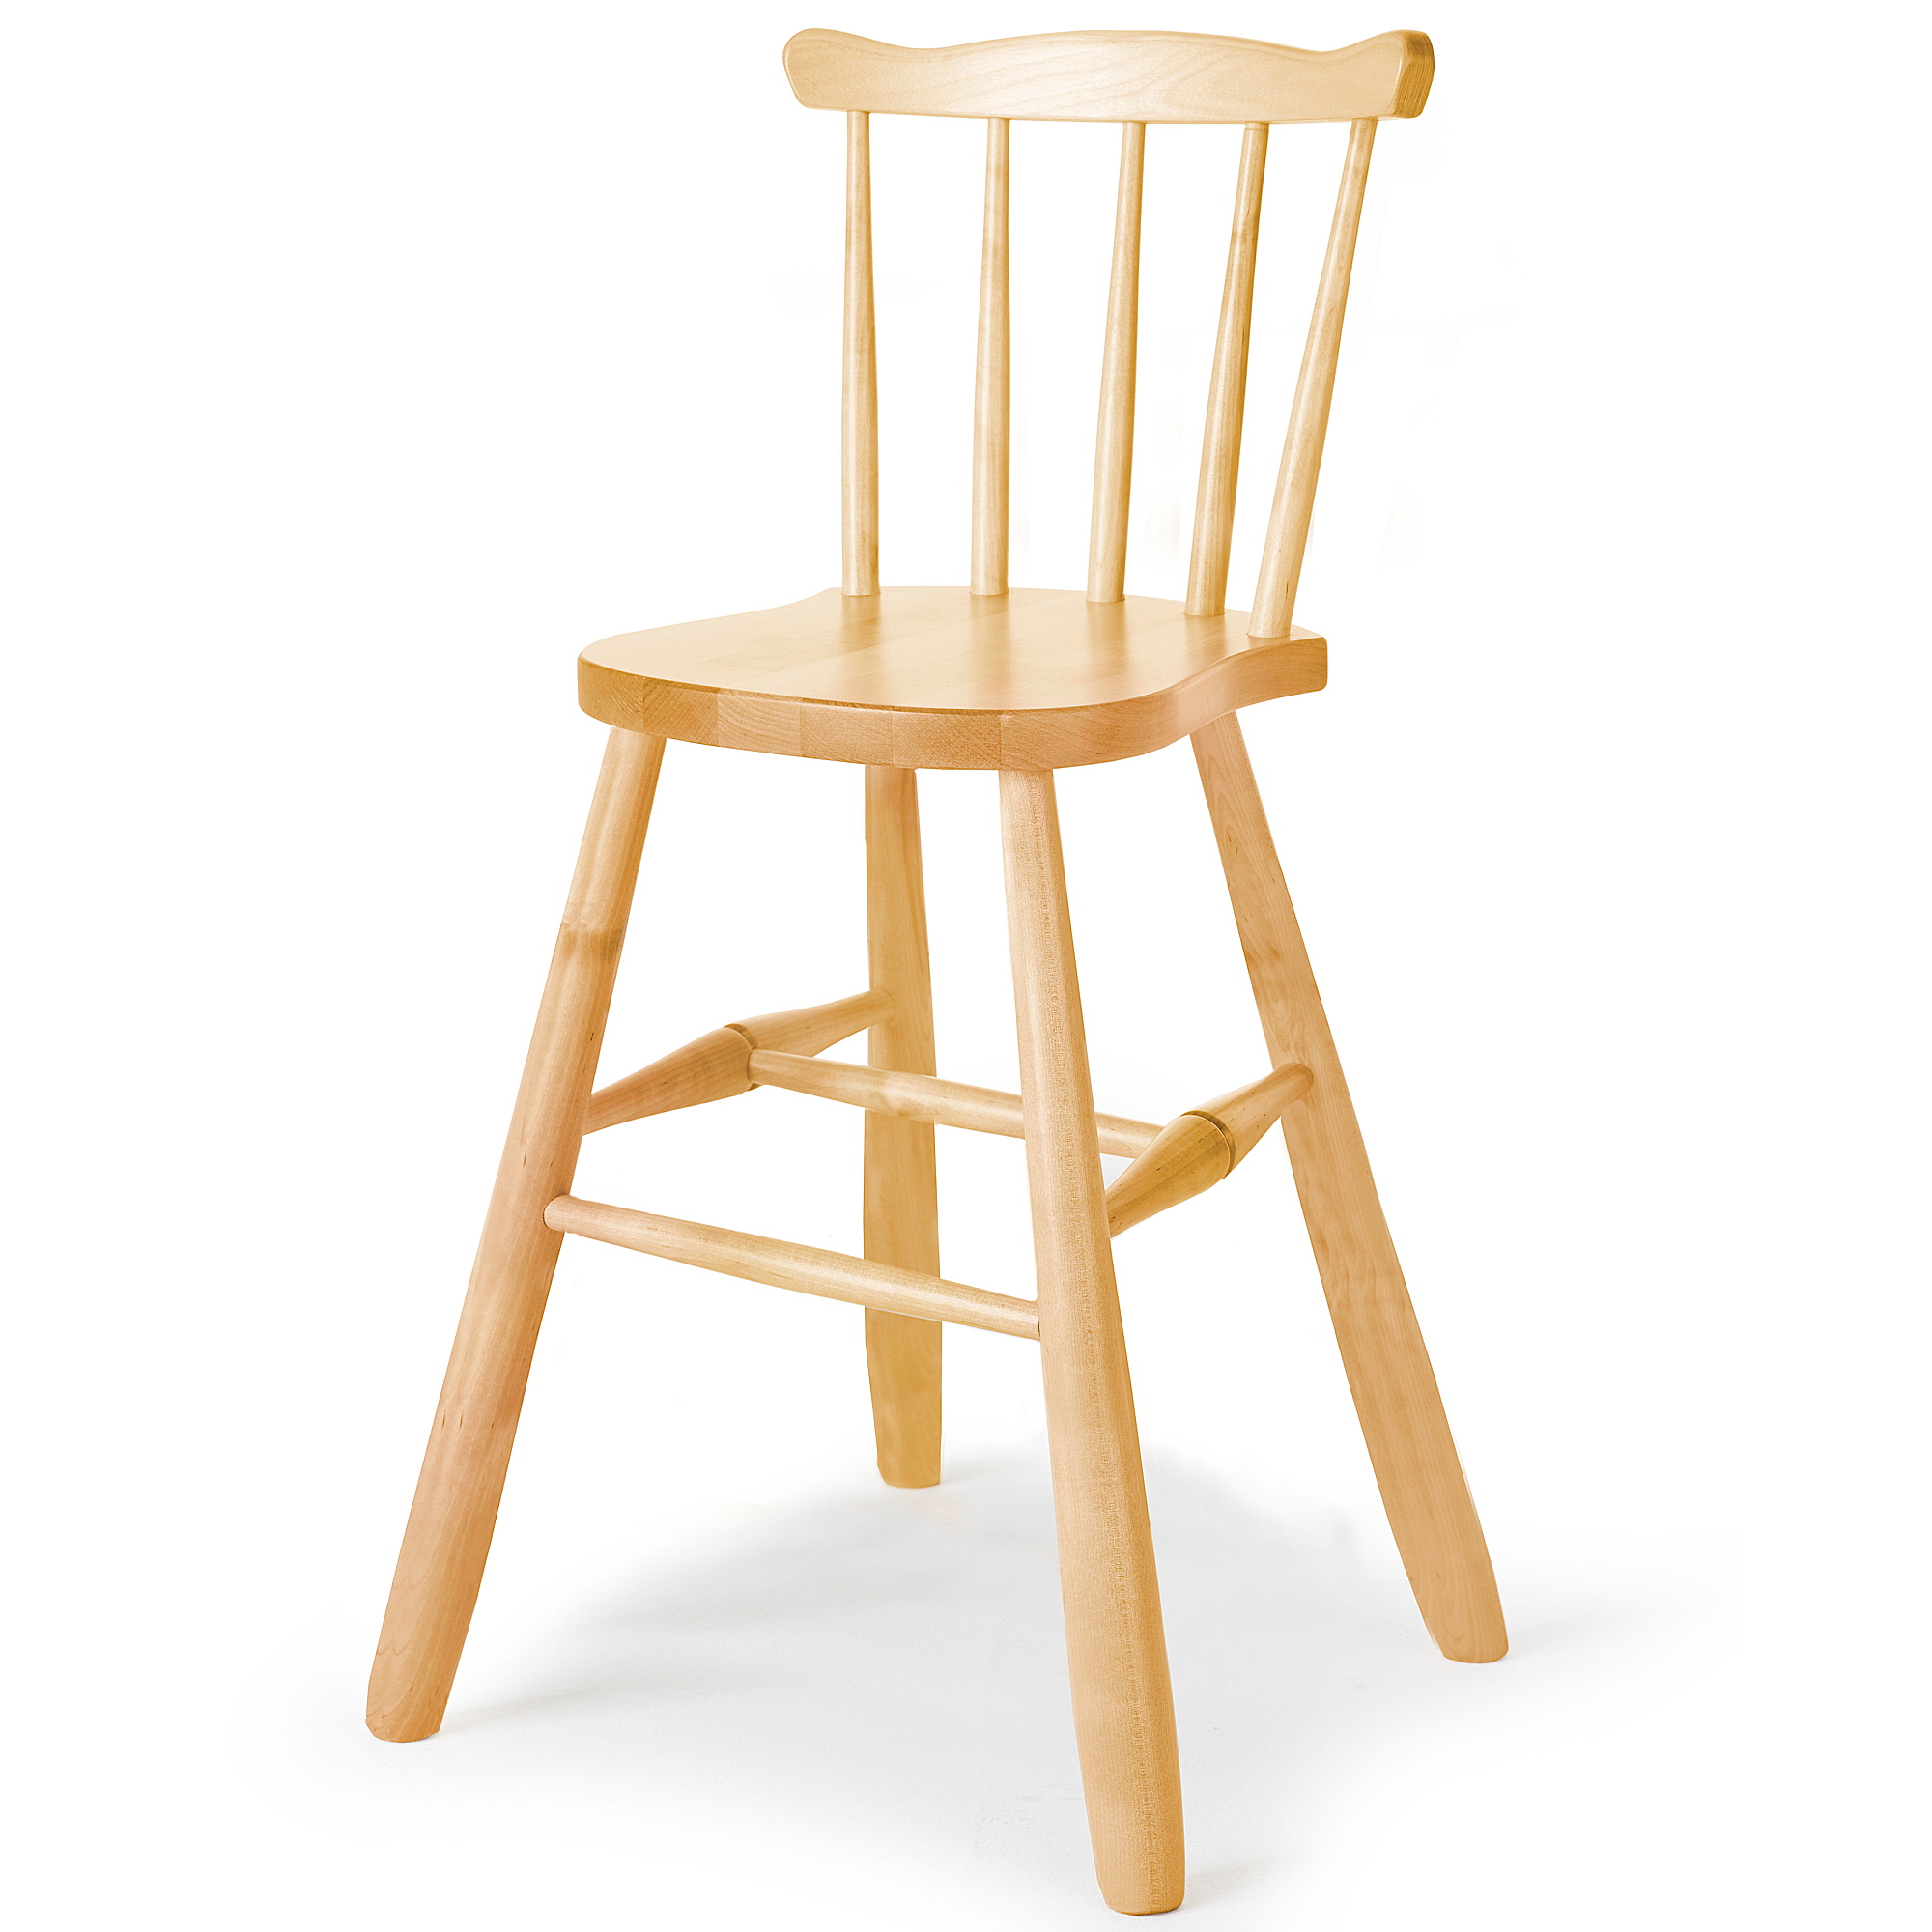 Dětská židle BASIC, výška 520 mm, bříza